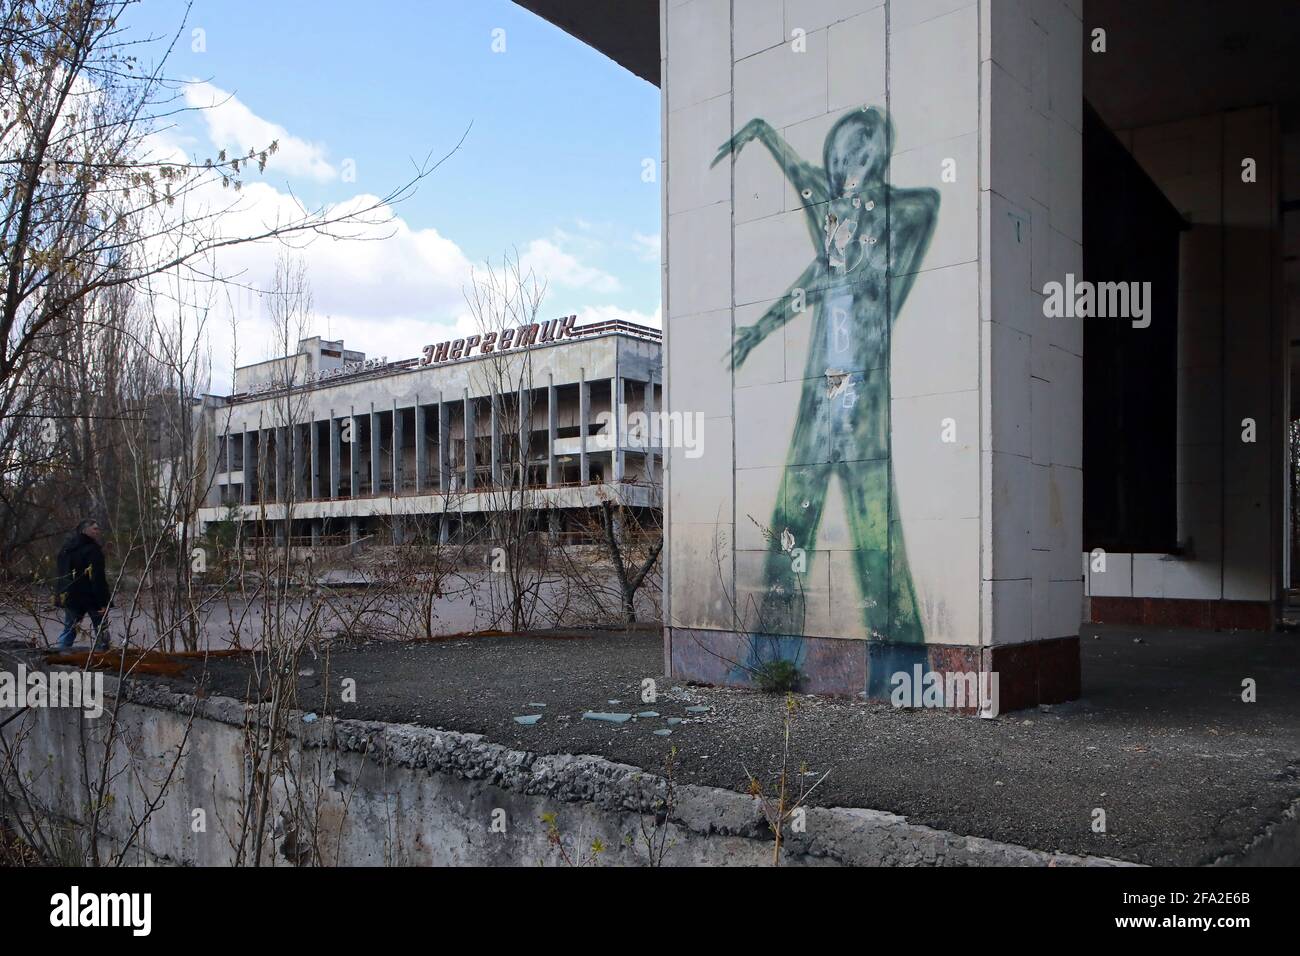 REGIÓN DE KIEV, UCRANIA - 21 DE ABRIL de 2021 - Se ve un mural cerca del Palacio Energetik de Cultura, Prypiat, región de Kiev, norte de Ucrania. Foto de stock